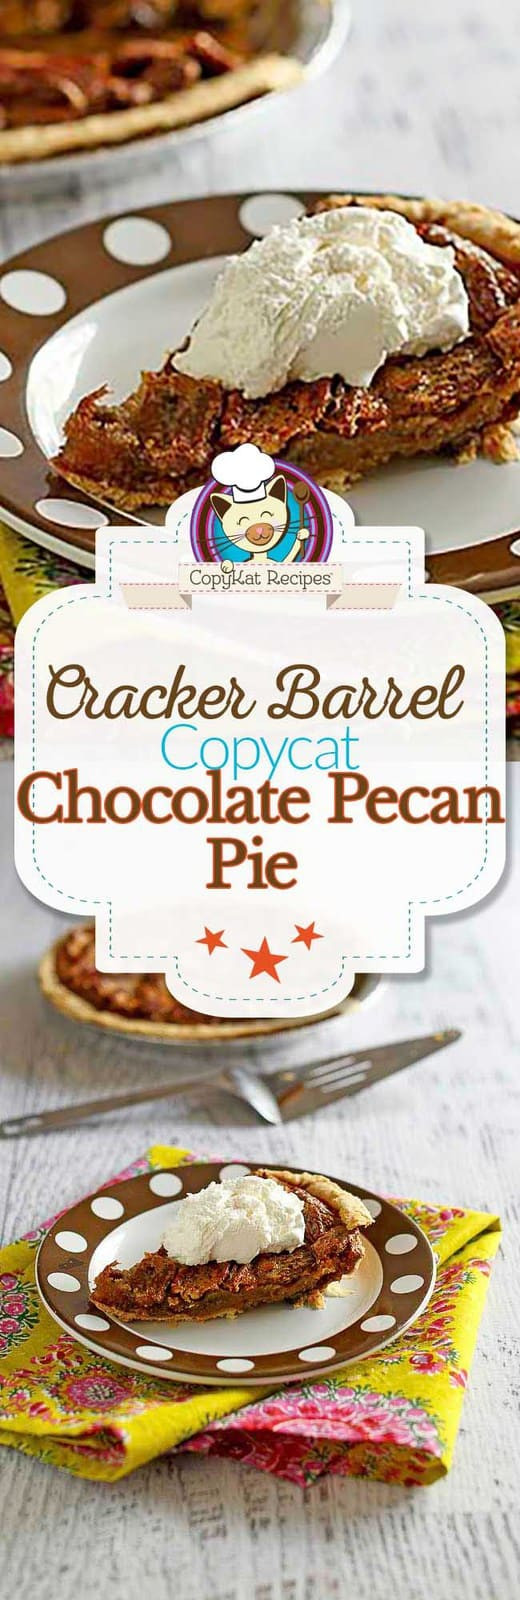 Cracker Barrel Pecan Pie
 Cracker Barrel Chocolate Pecan Pie